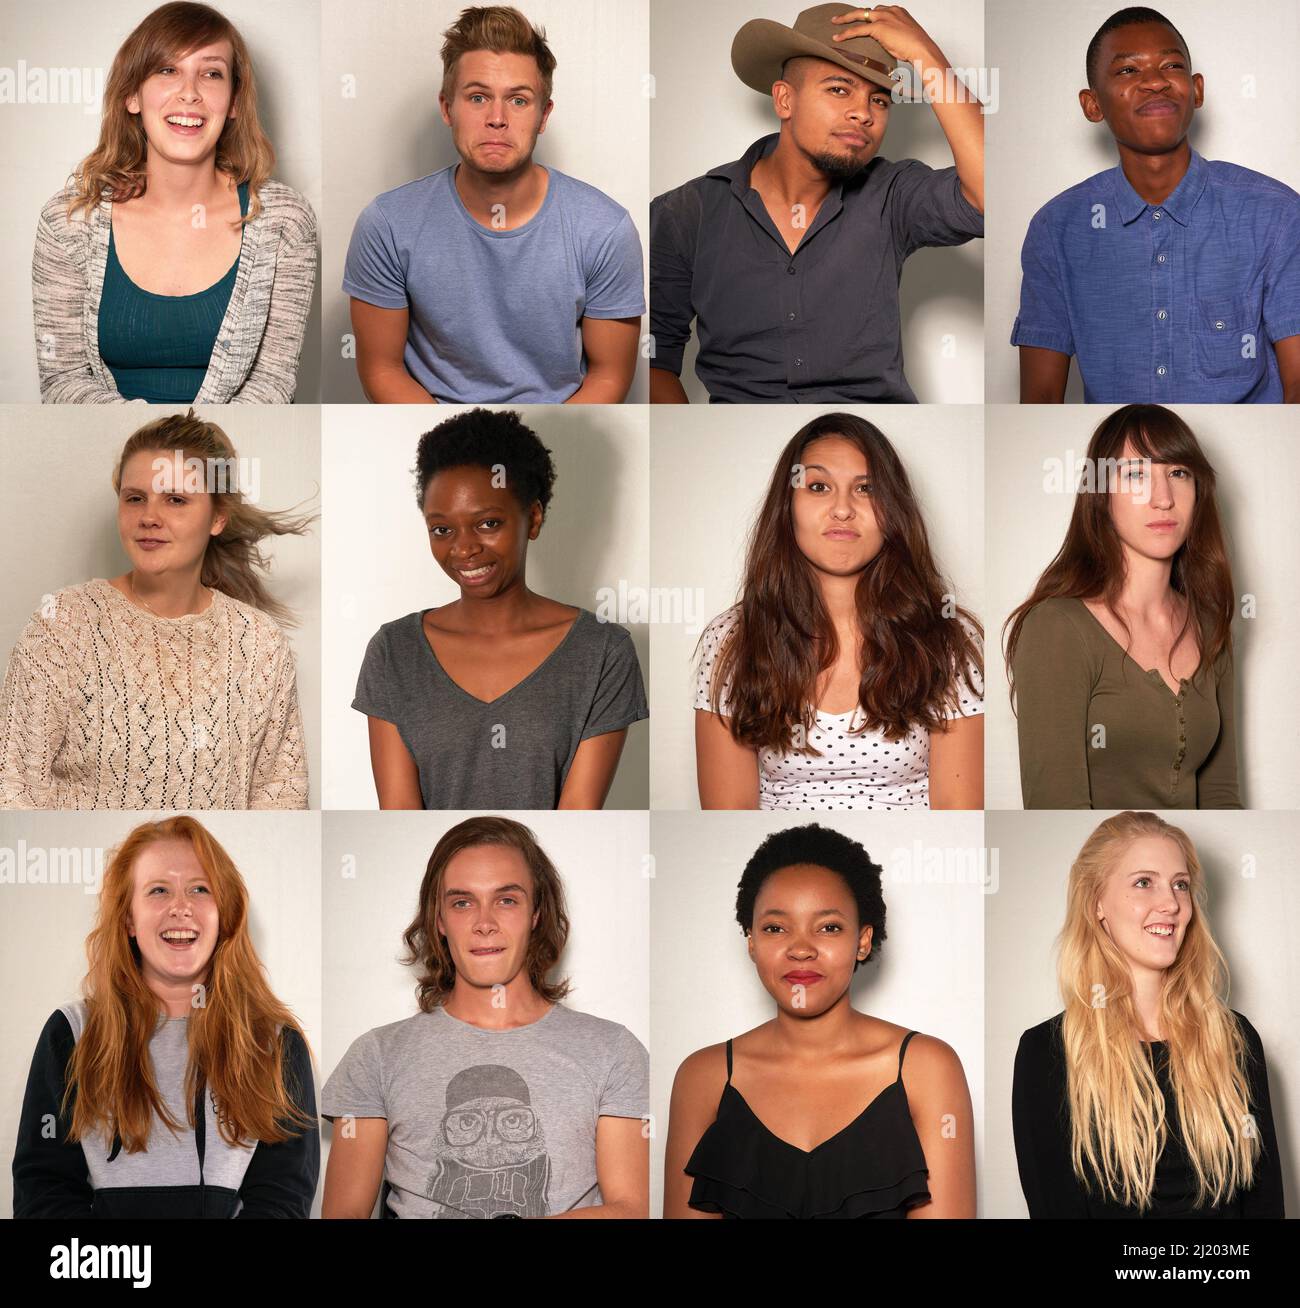 Unterschiedliche Striche für verschiedene Leute. Zusammengesetzte Aufnahme von jungen Menschen, die in einer Fotokabine posieren. Stockfoto